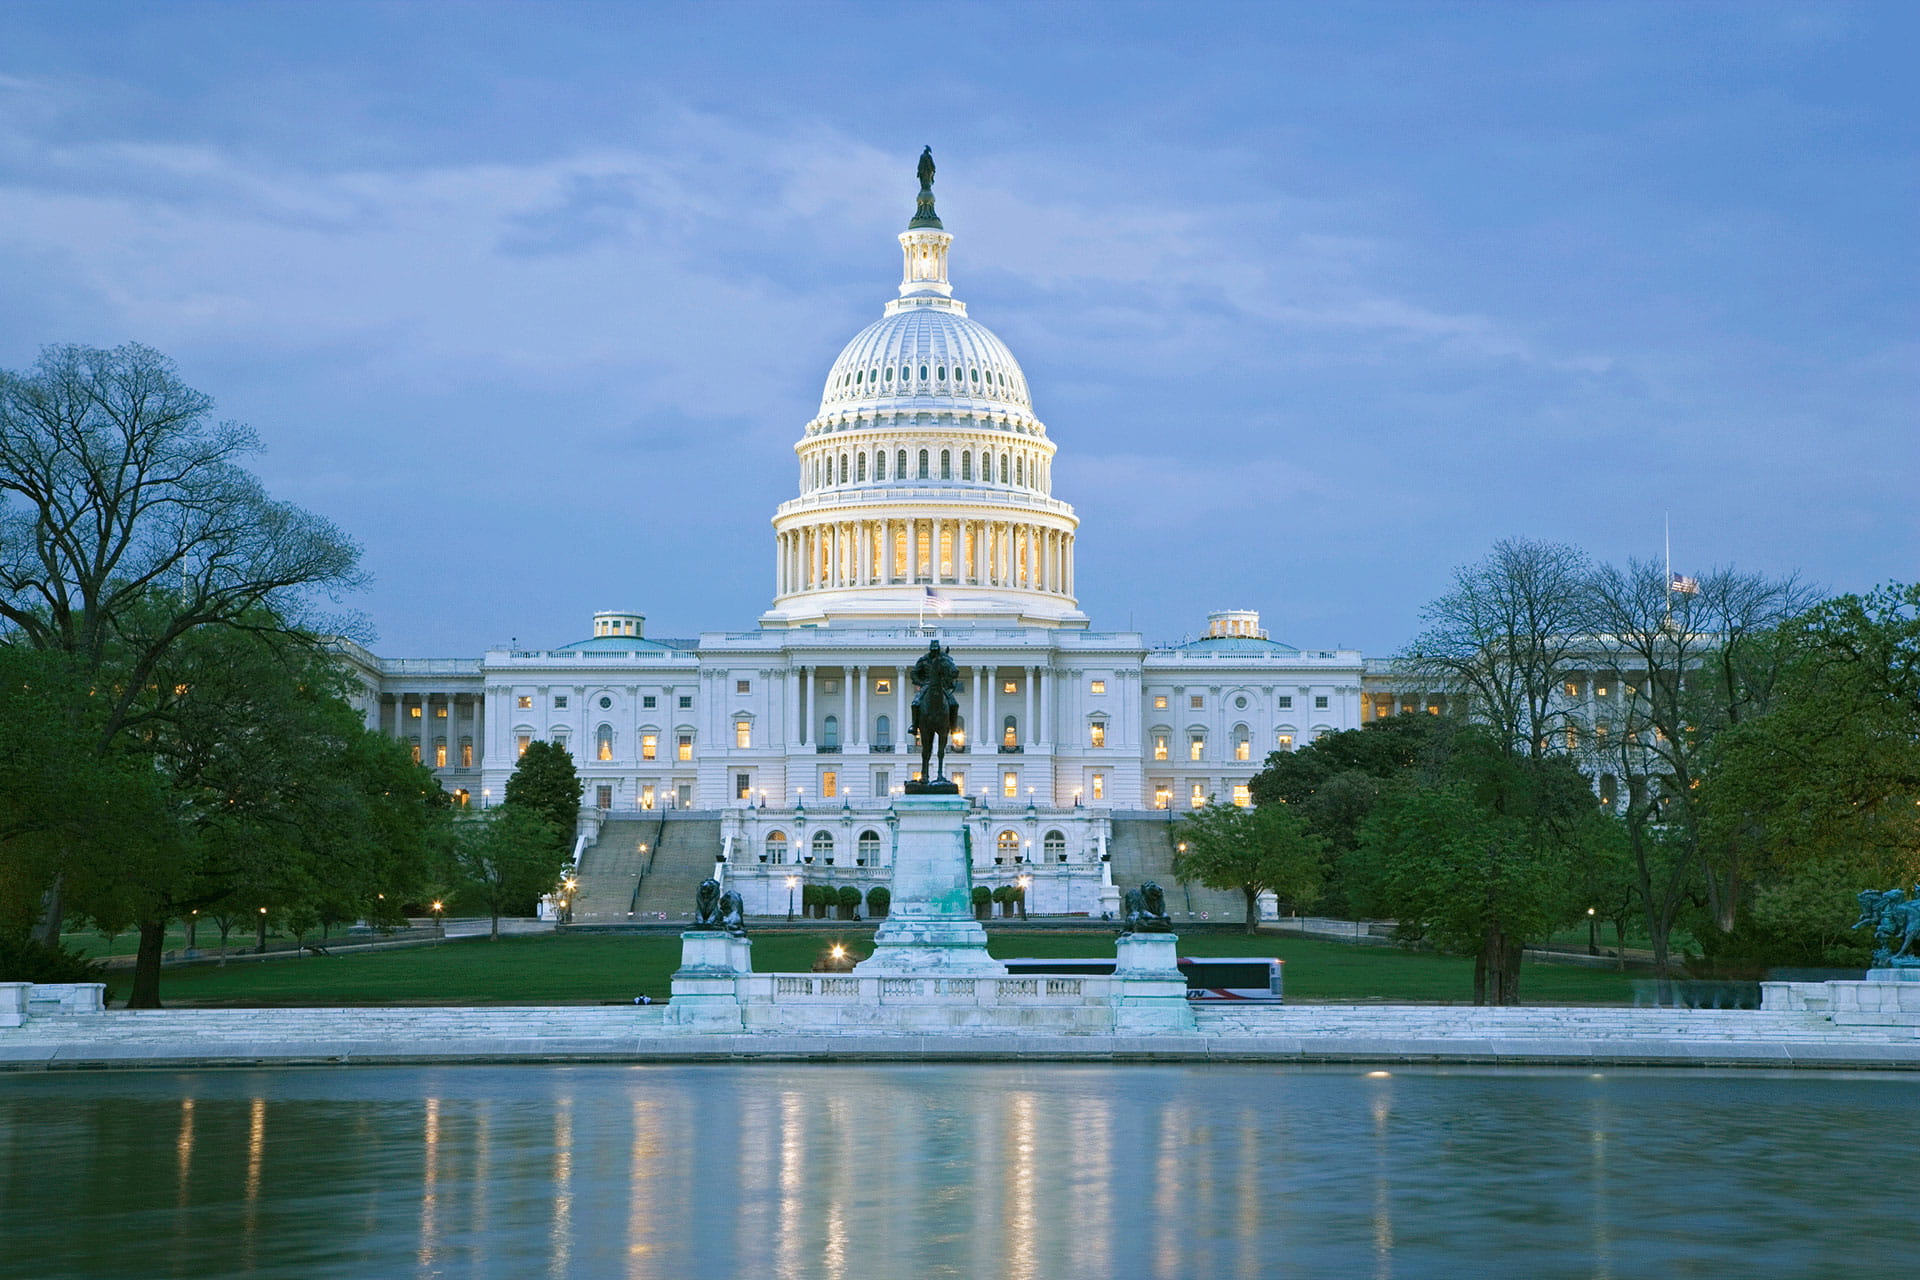 The Capitol Building, Washington D.C.